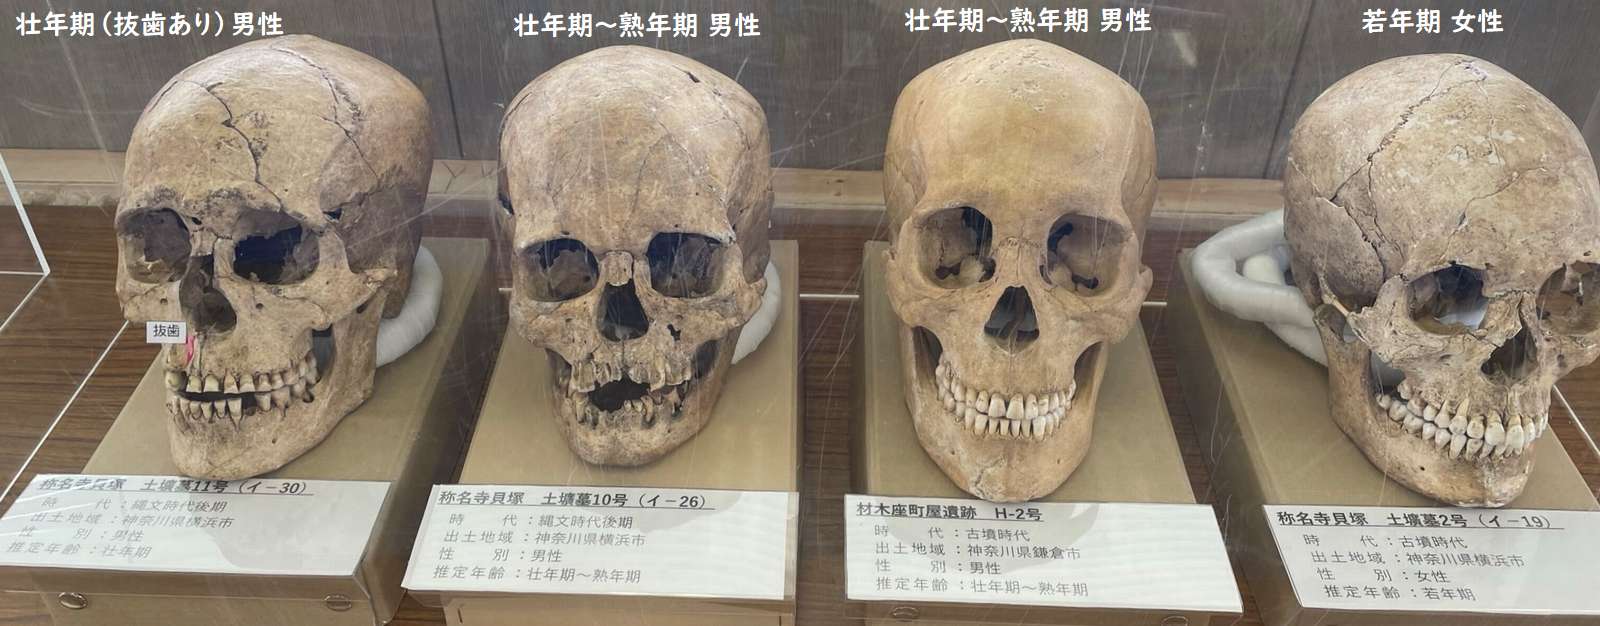 年代の違う頭骨の展示